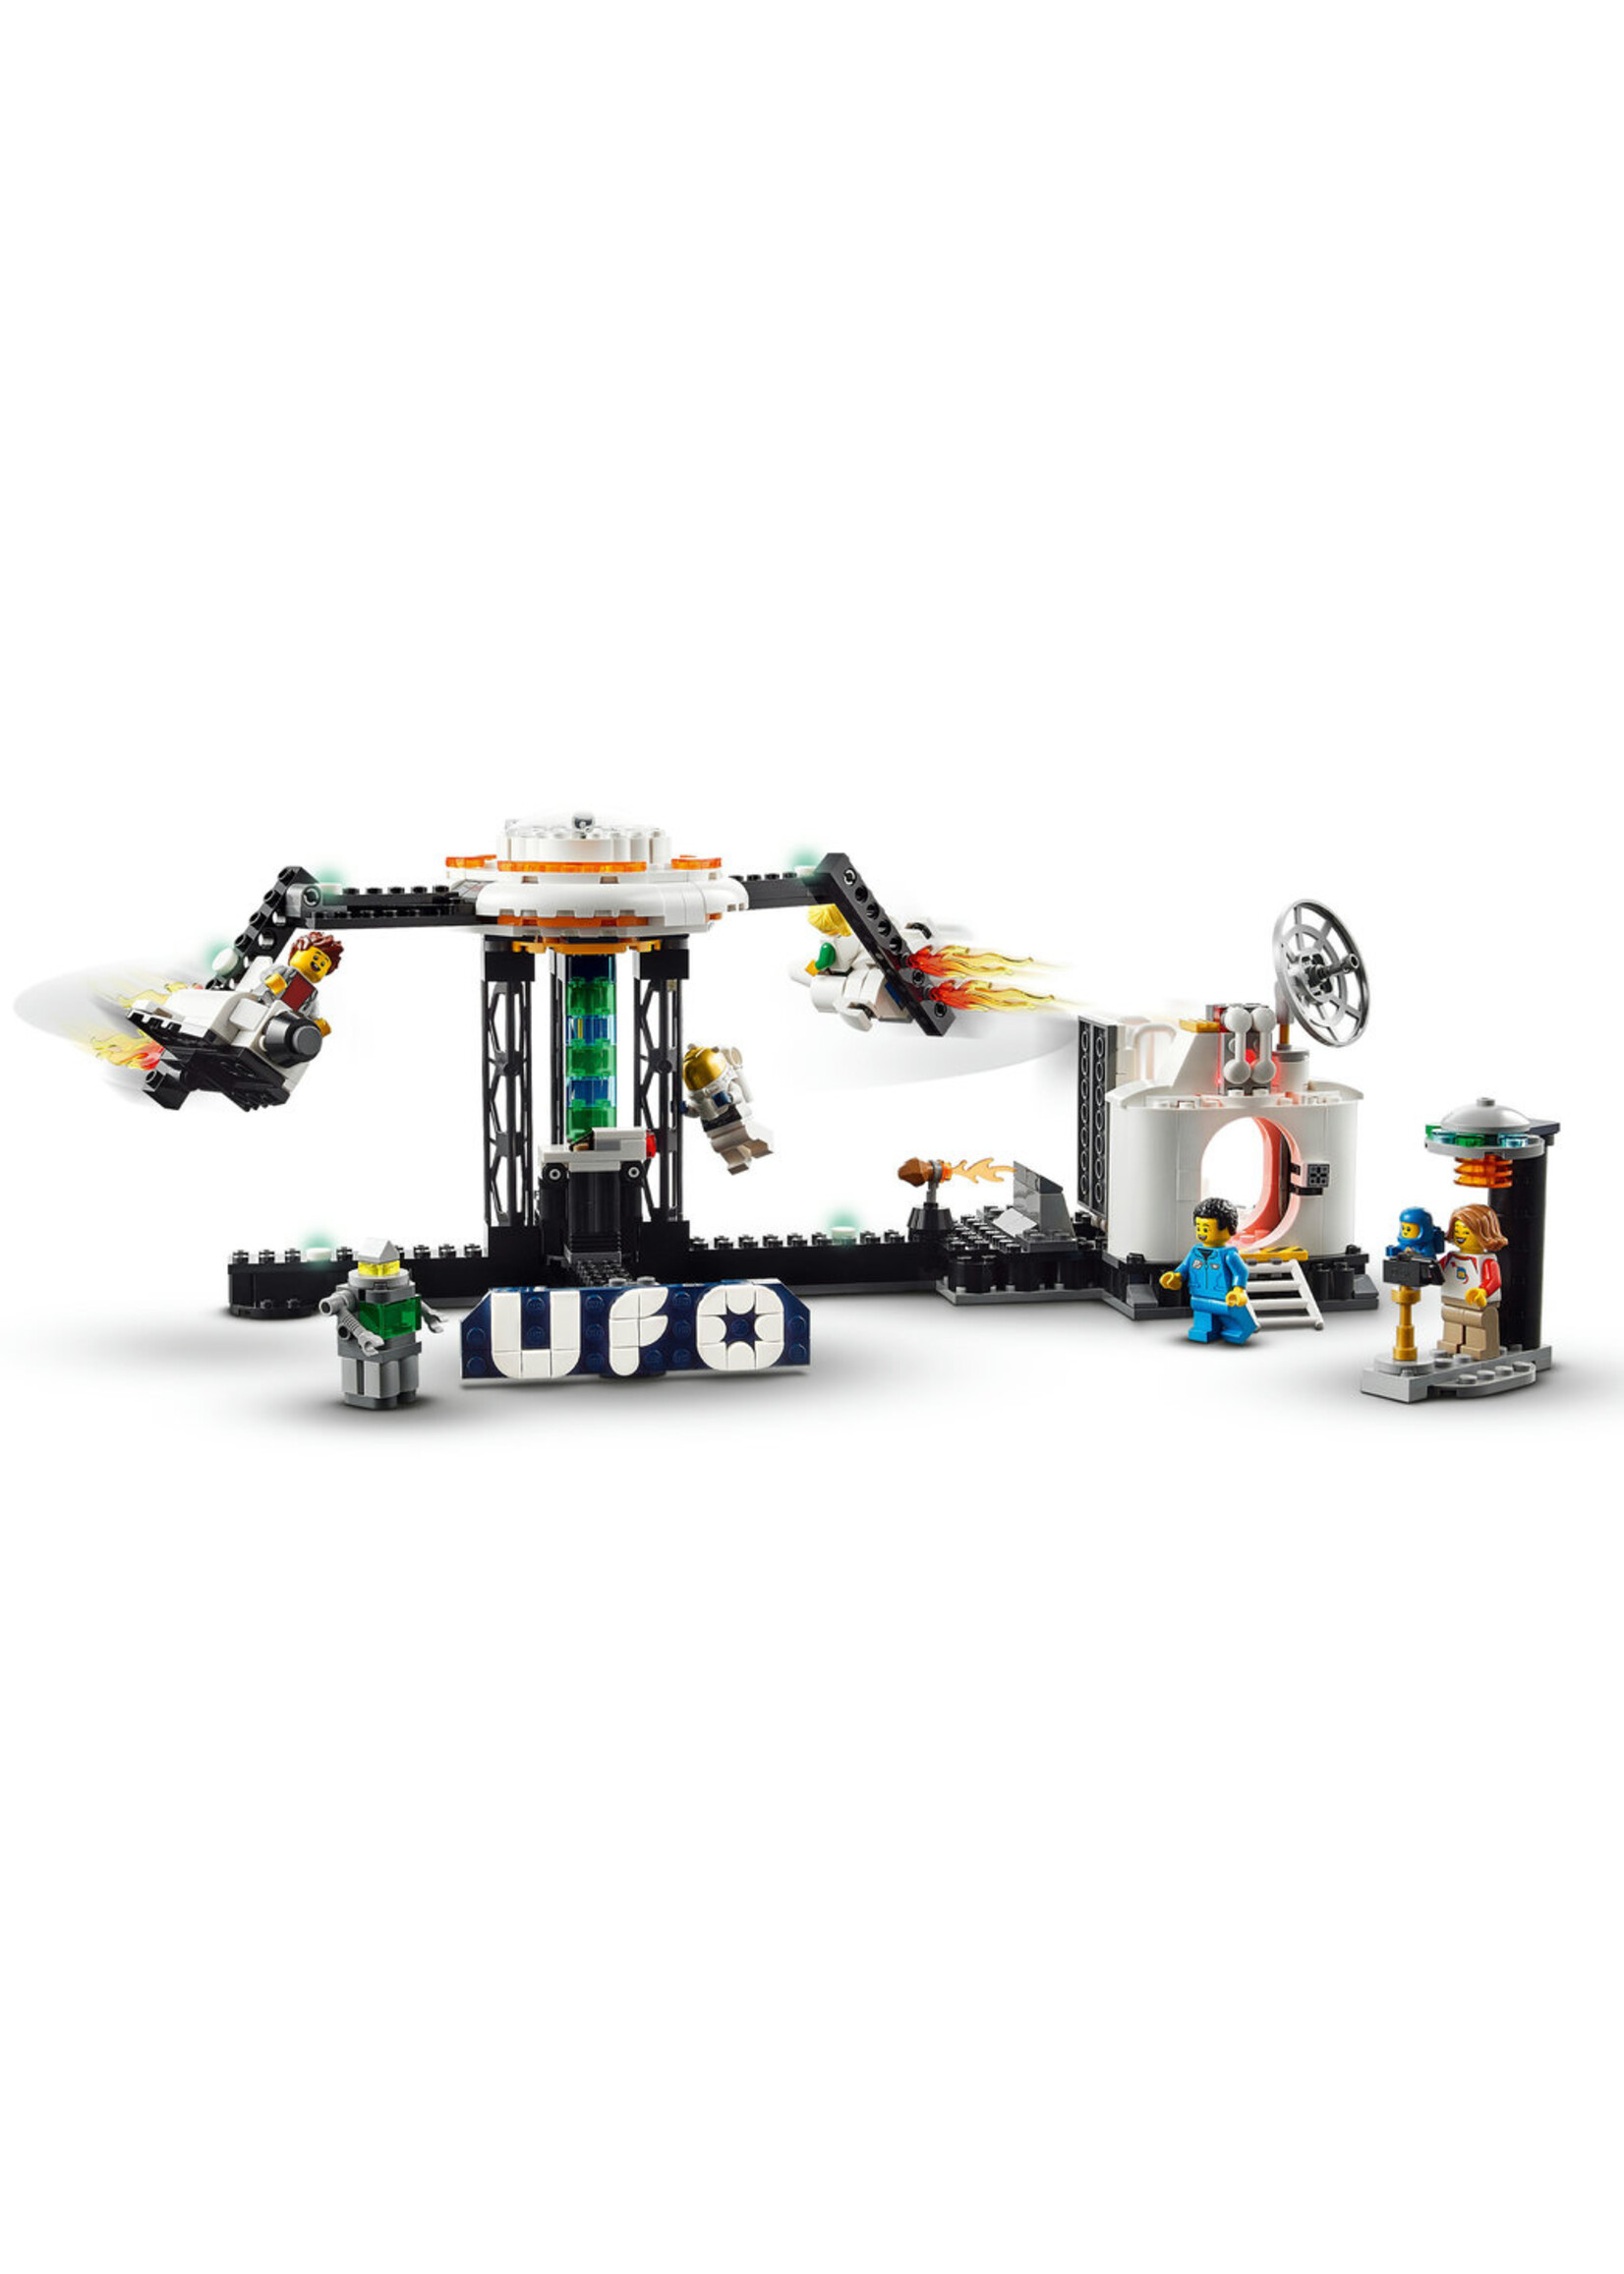 LEGO 31142 - Space Roller Coaster